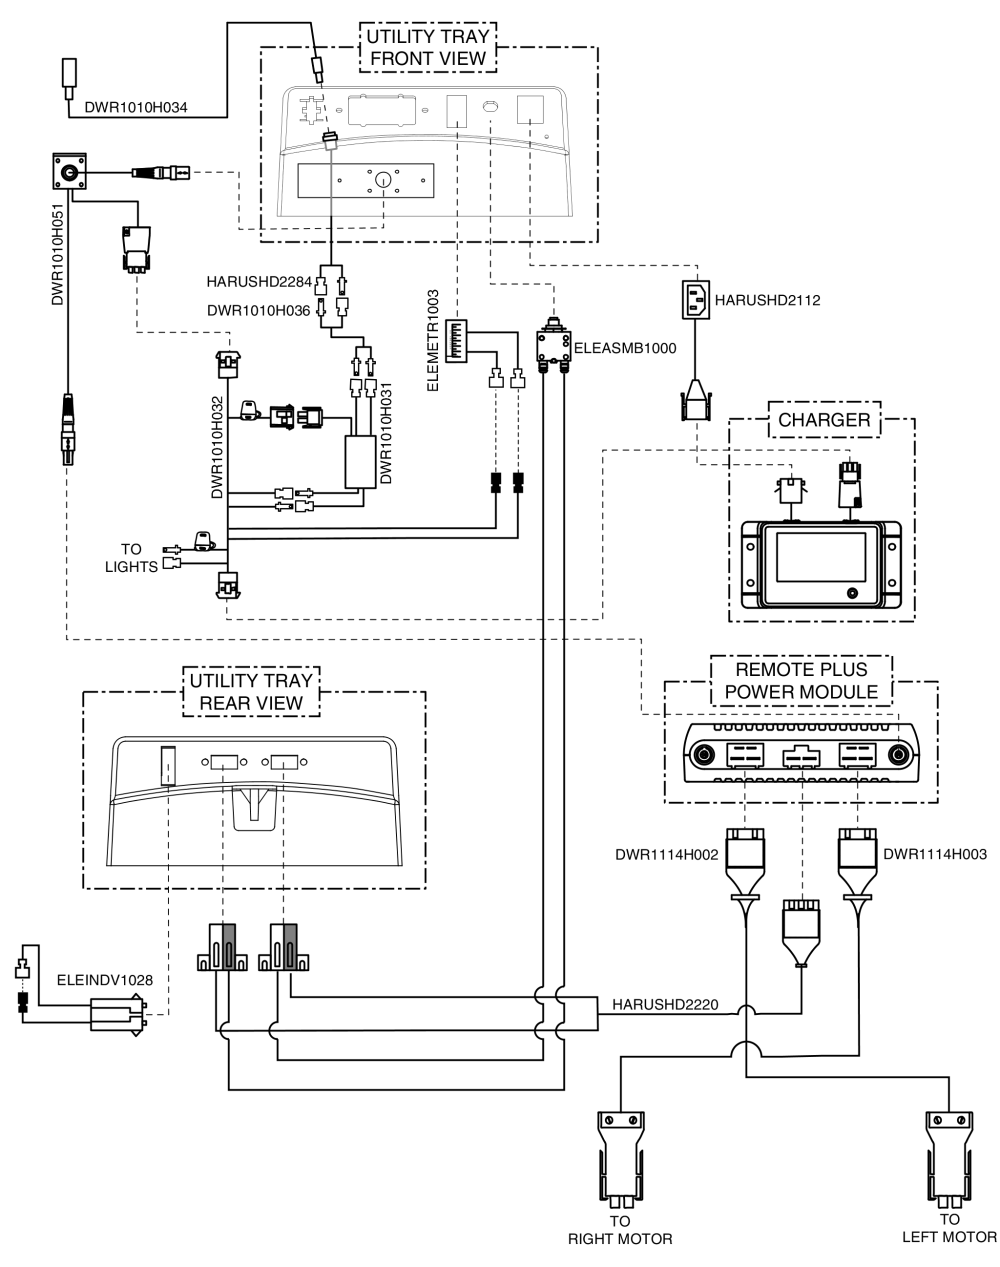 Remote Plus, Recline/tilt Inhibit, Electrical System Diagram, Jazzy 1113 Ats parts diagram